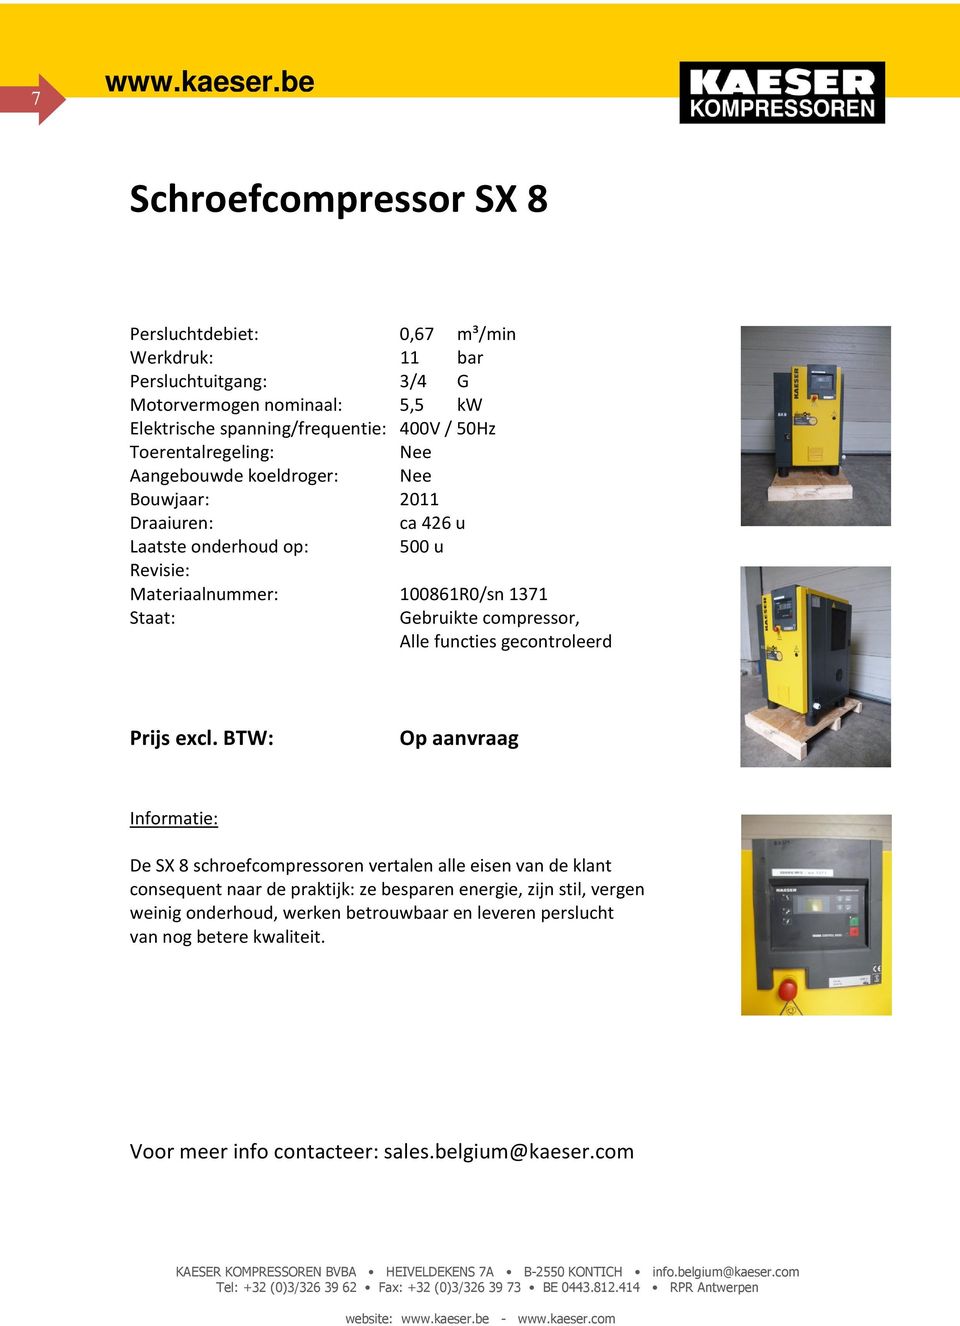 Materiaalnummer: 100861R0/sn 1371 De SX 8 schroefcompressoren vertalen alle eisen van de klant consequent naar de